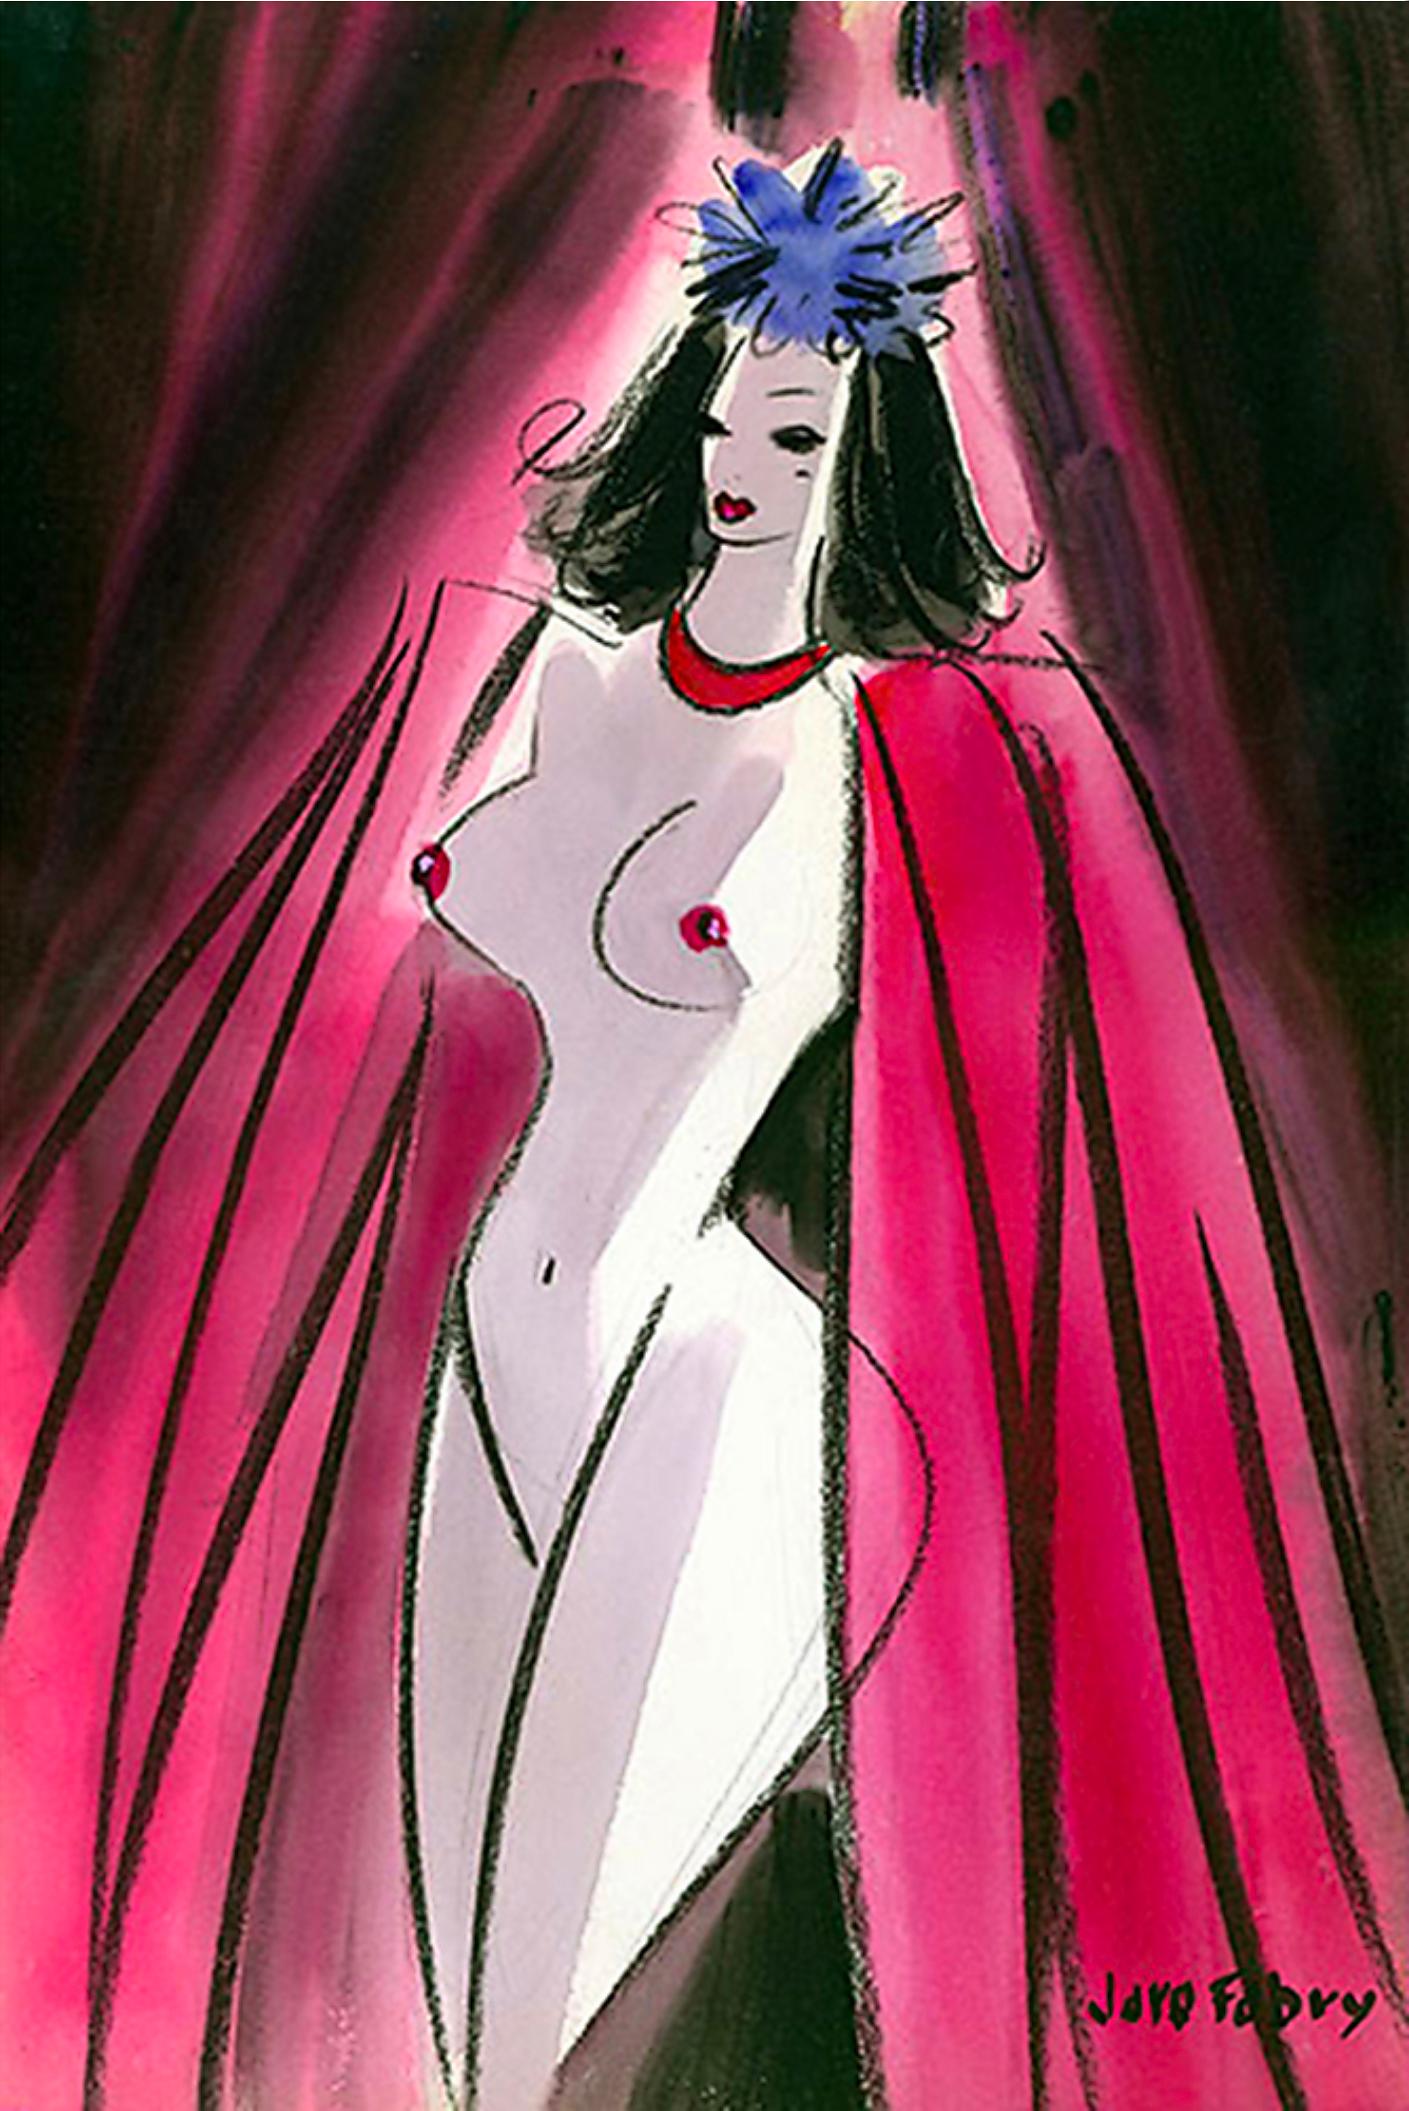 Jaro Fabry Nude – Glamouröser Akt mit rotem Mantel, der von der Vorderseite des Vorhangs entspringt,  Goldenes Zeitalter des Hollywoods 